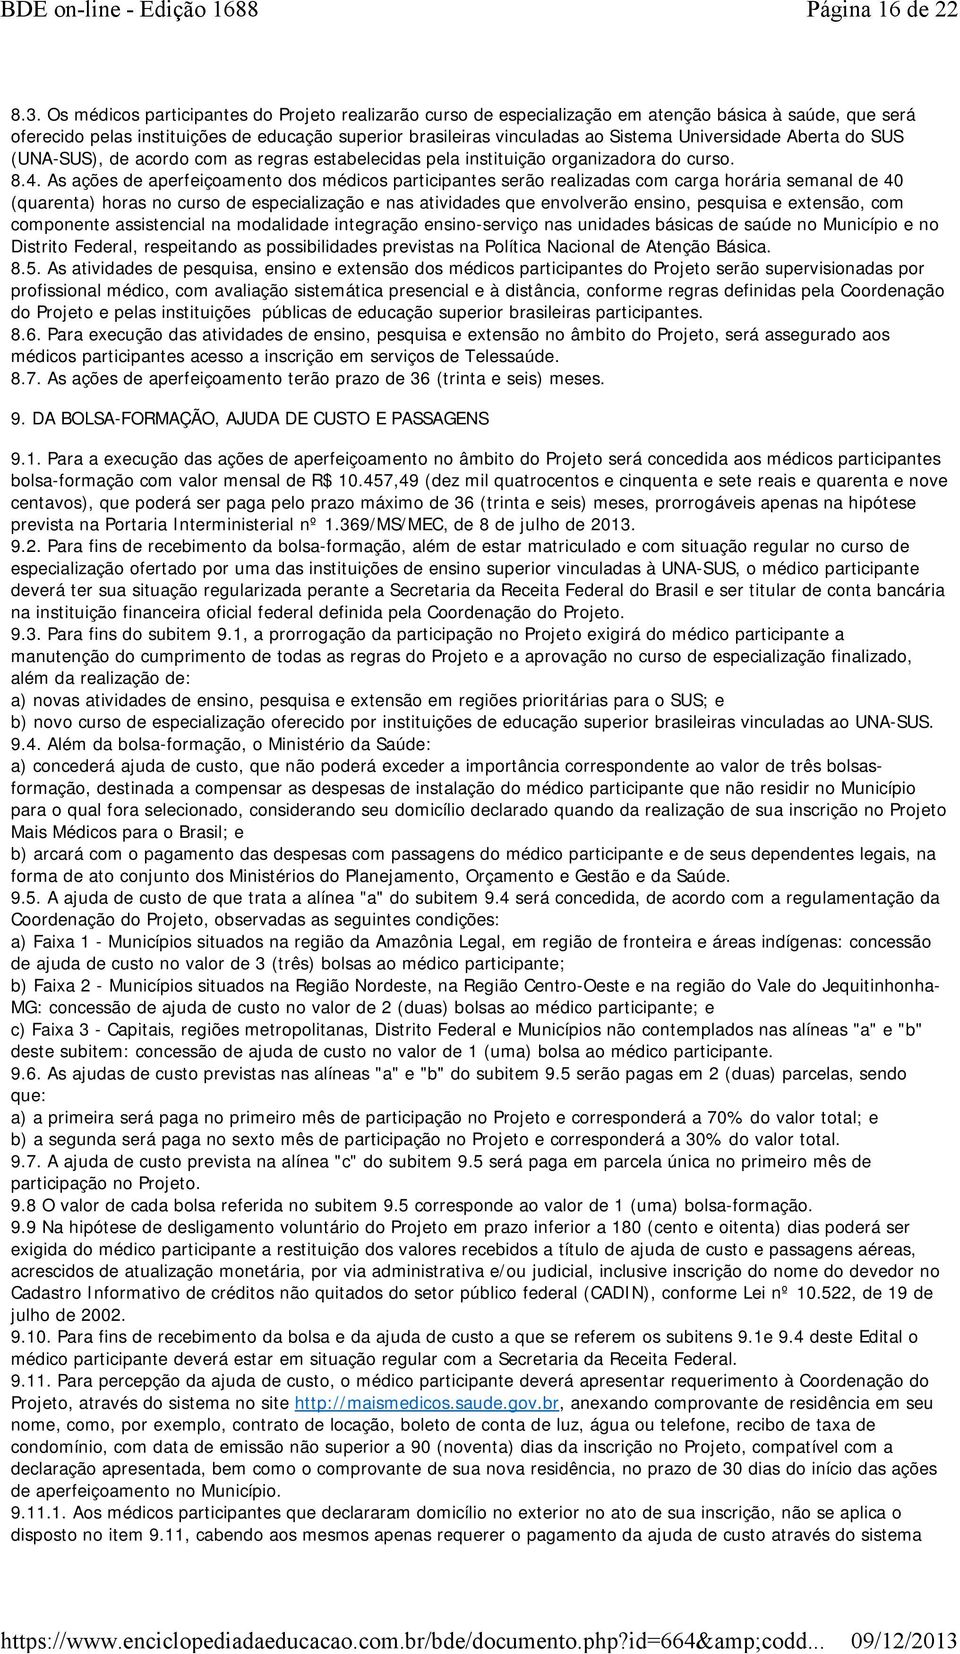 Universidade Aberta do SUS (UNA-SUS), de acordo com as regras estabelecidas pela instituição organizadora do curso. 8.4.